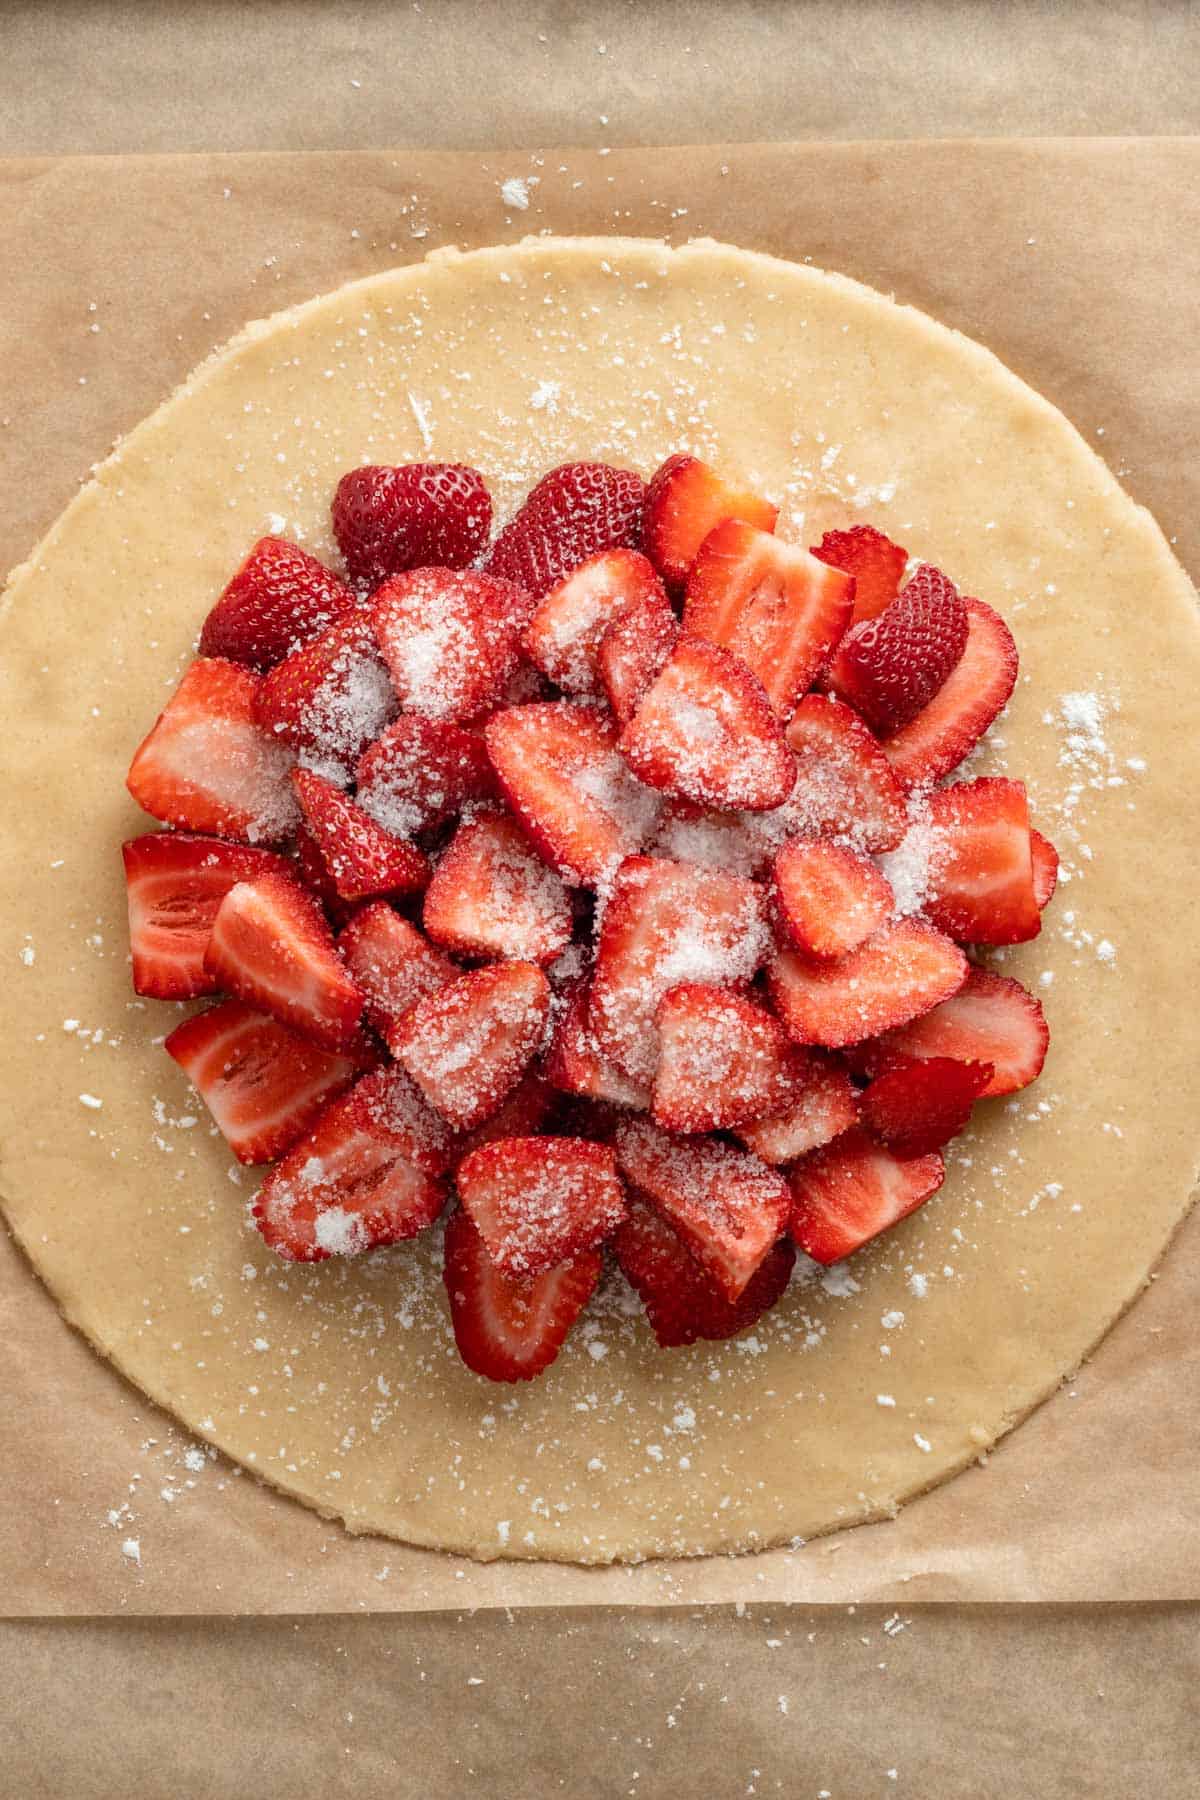 strawberries sprinkled with sugar